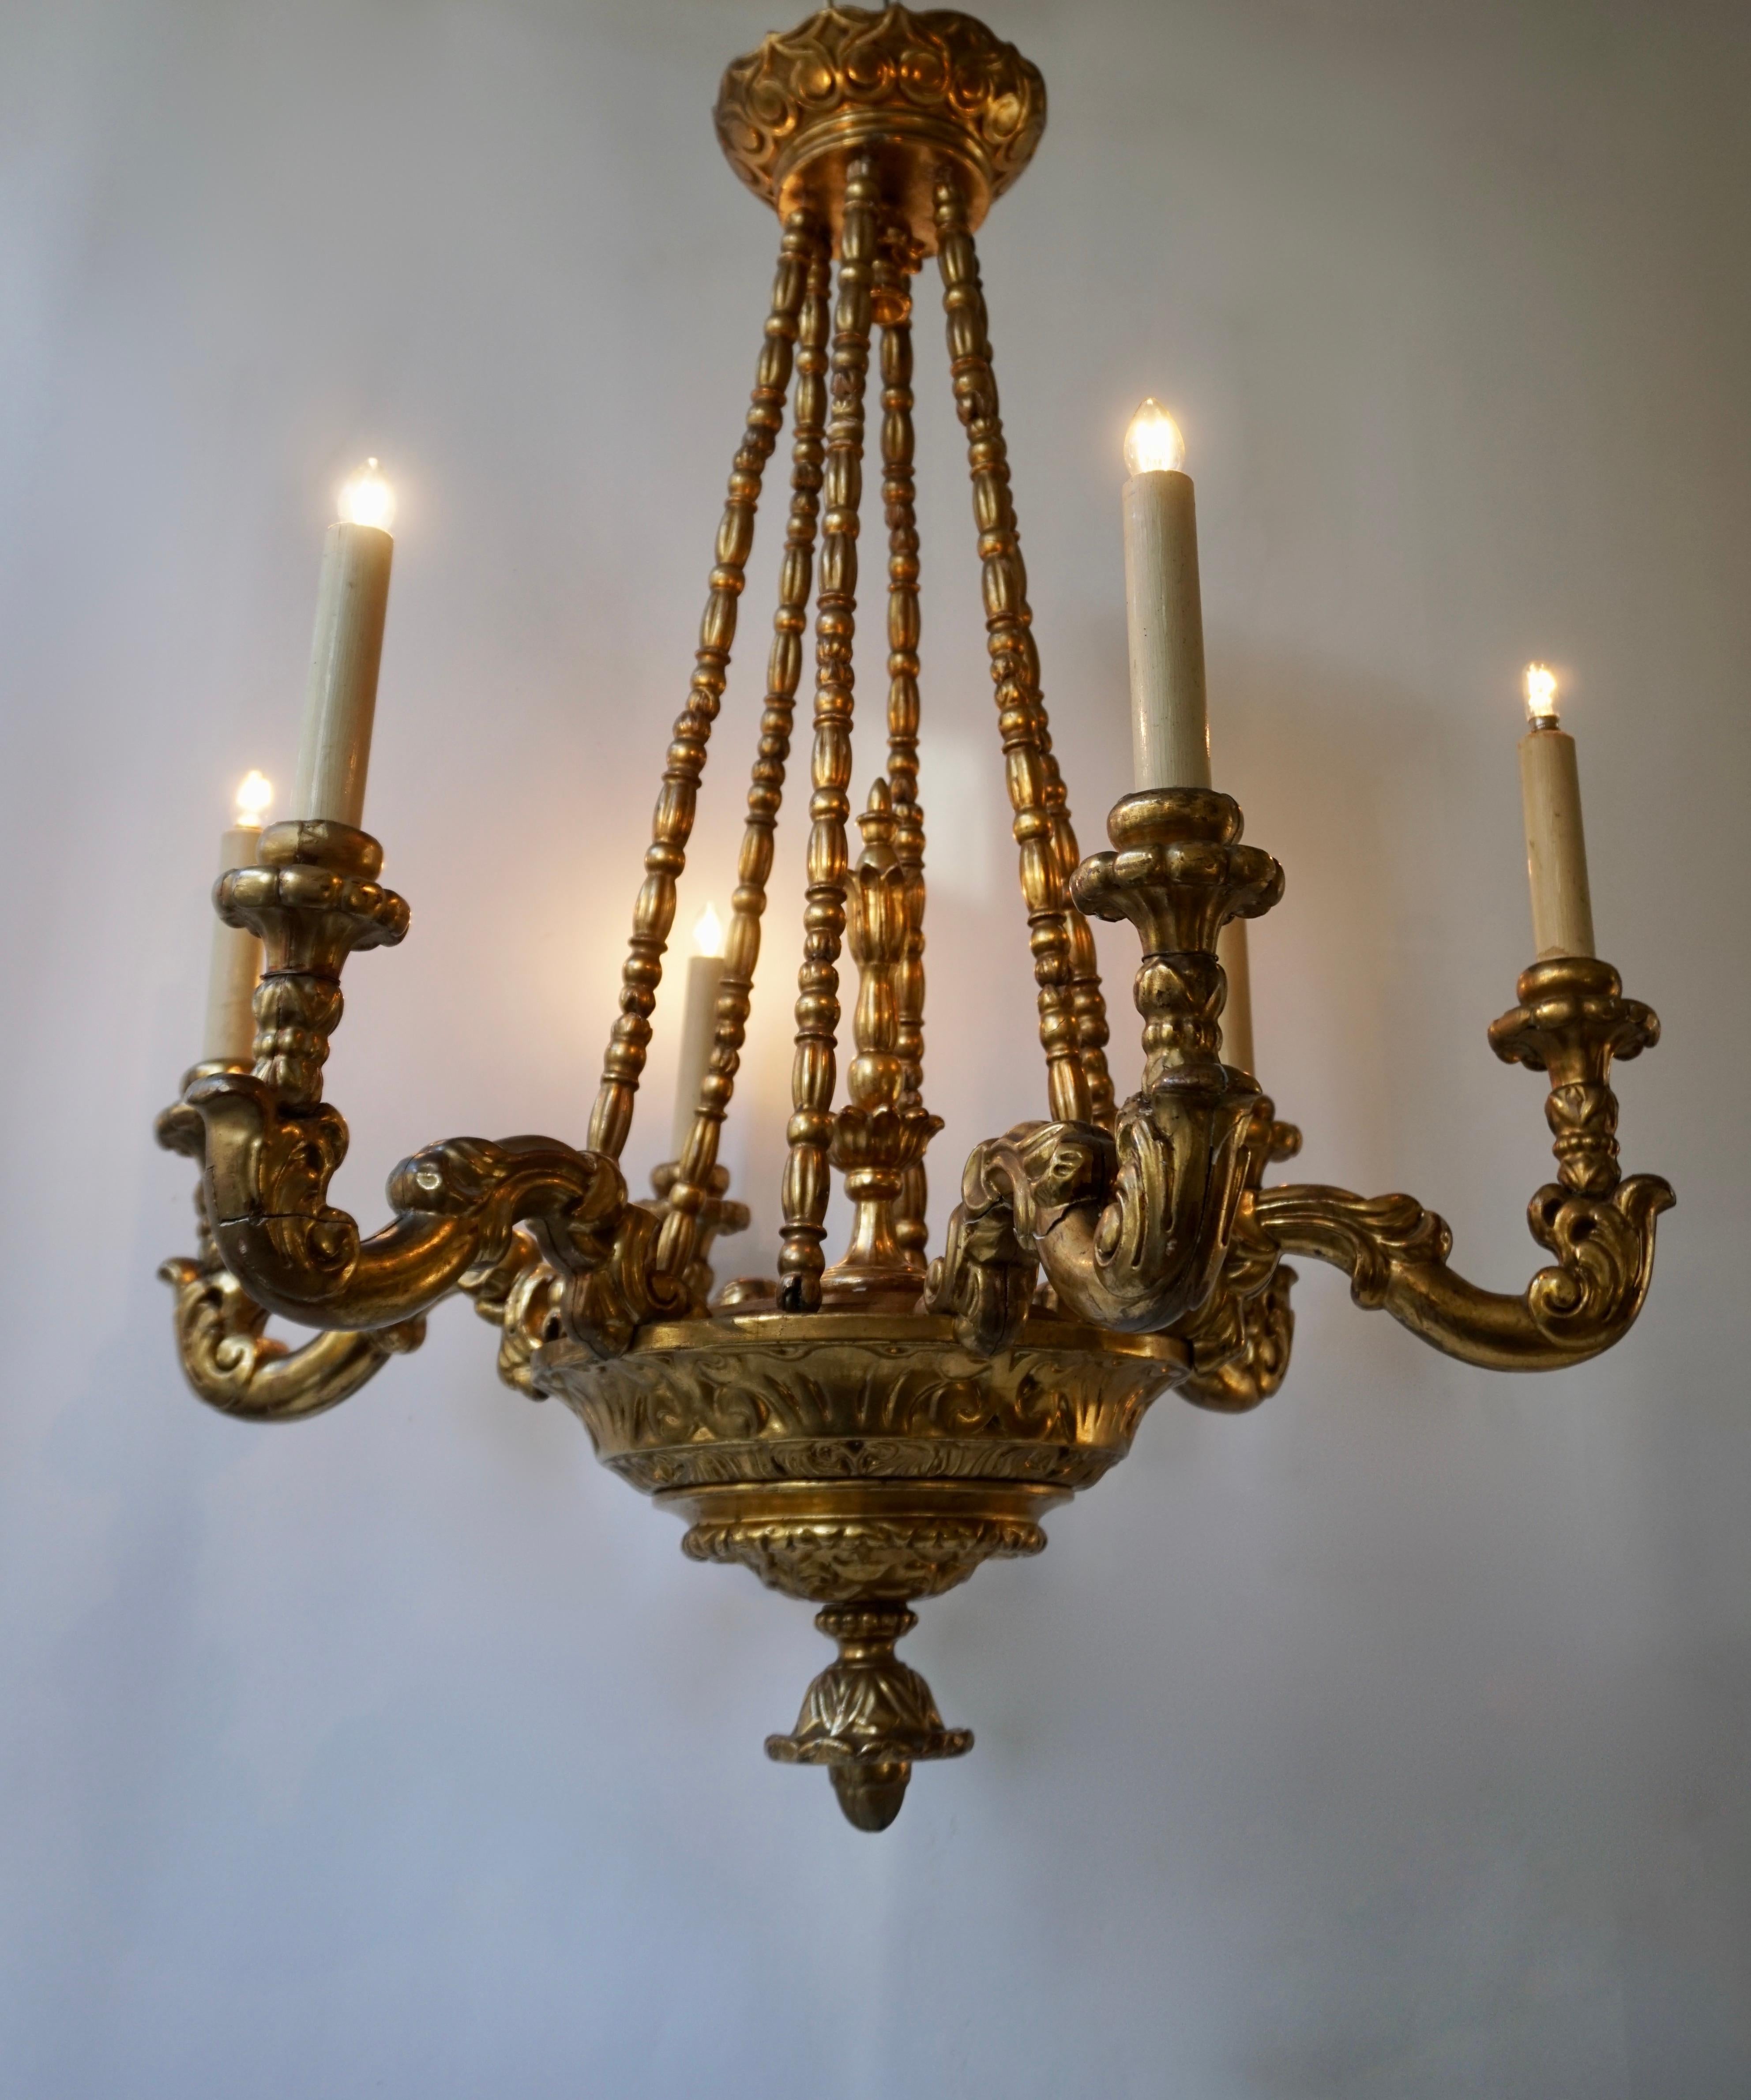 Gilt Highly Decorative and Elegant Gilded-Light Chandelier For Sale